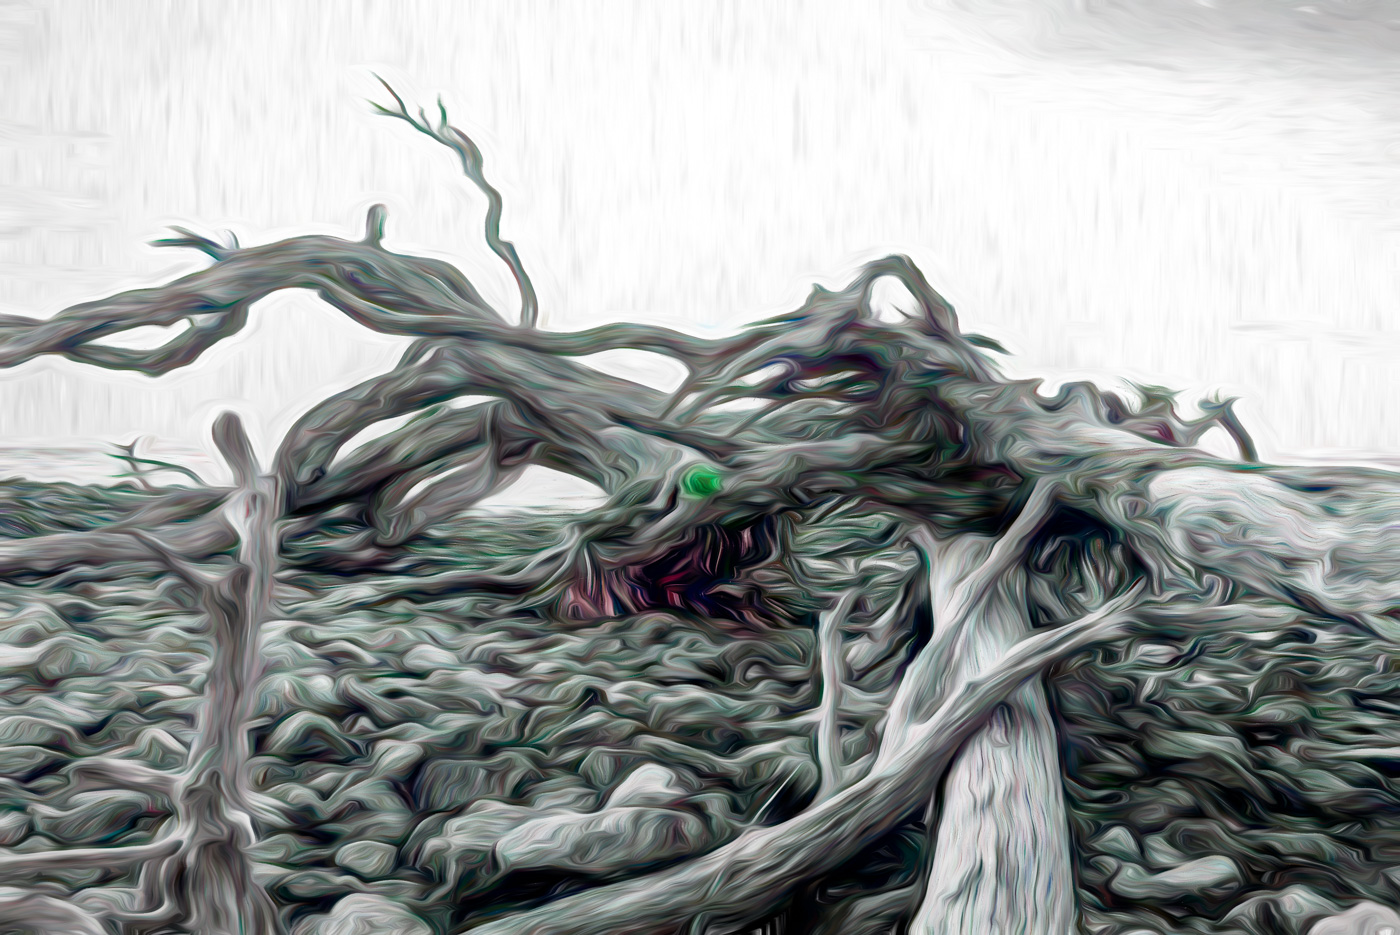 Driftwood Monster of Jekyll Island by Bob Legg